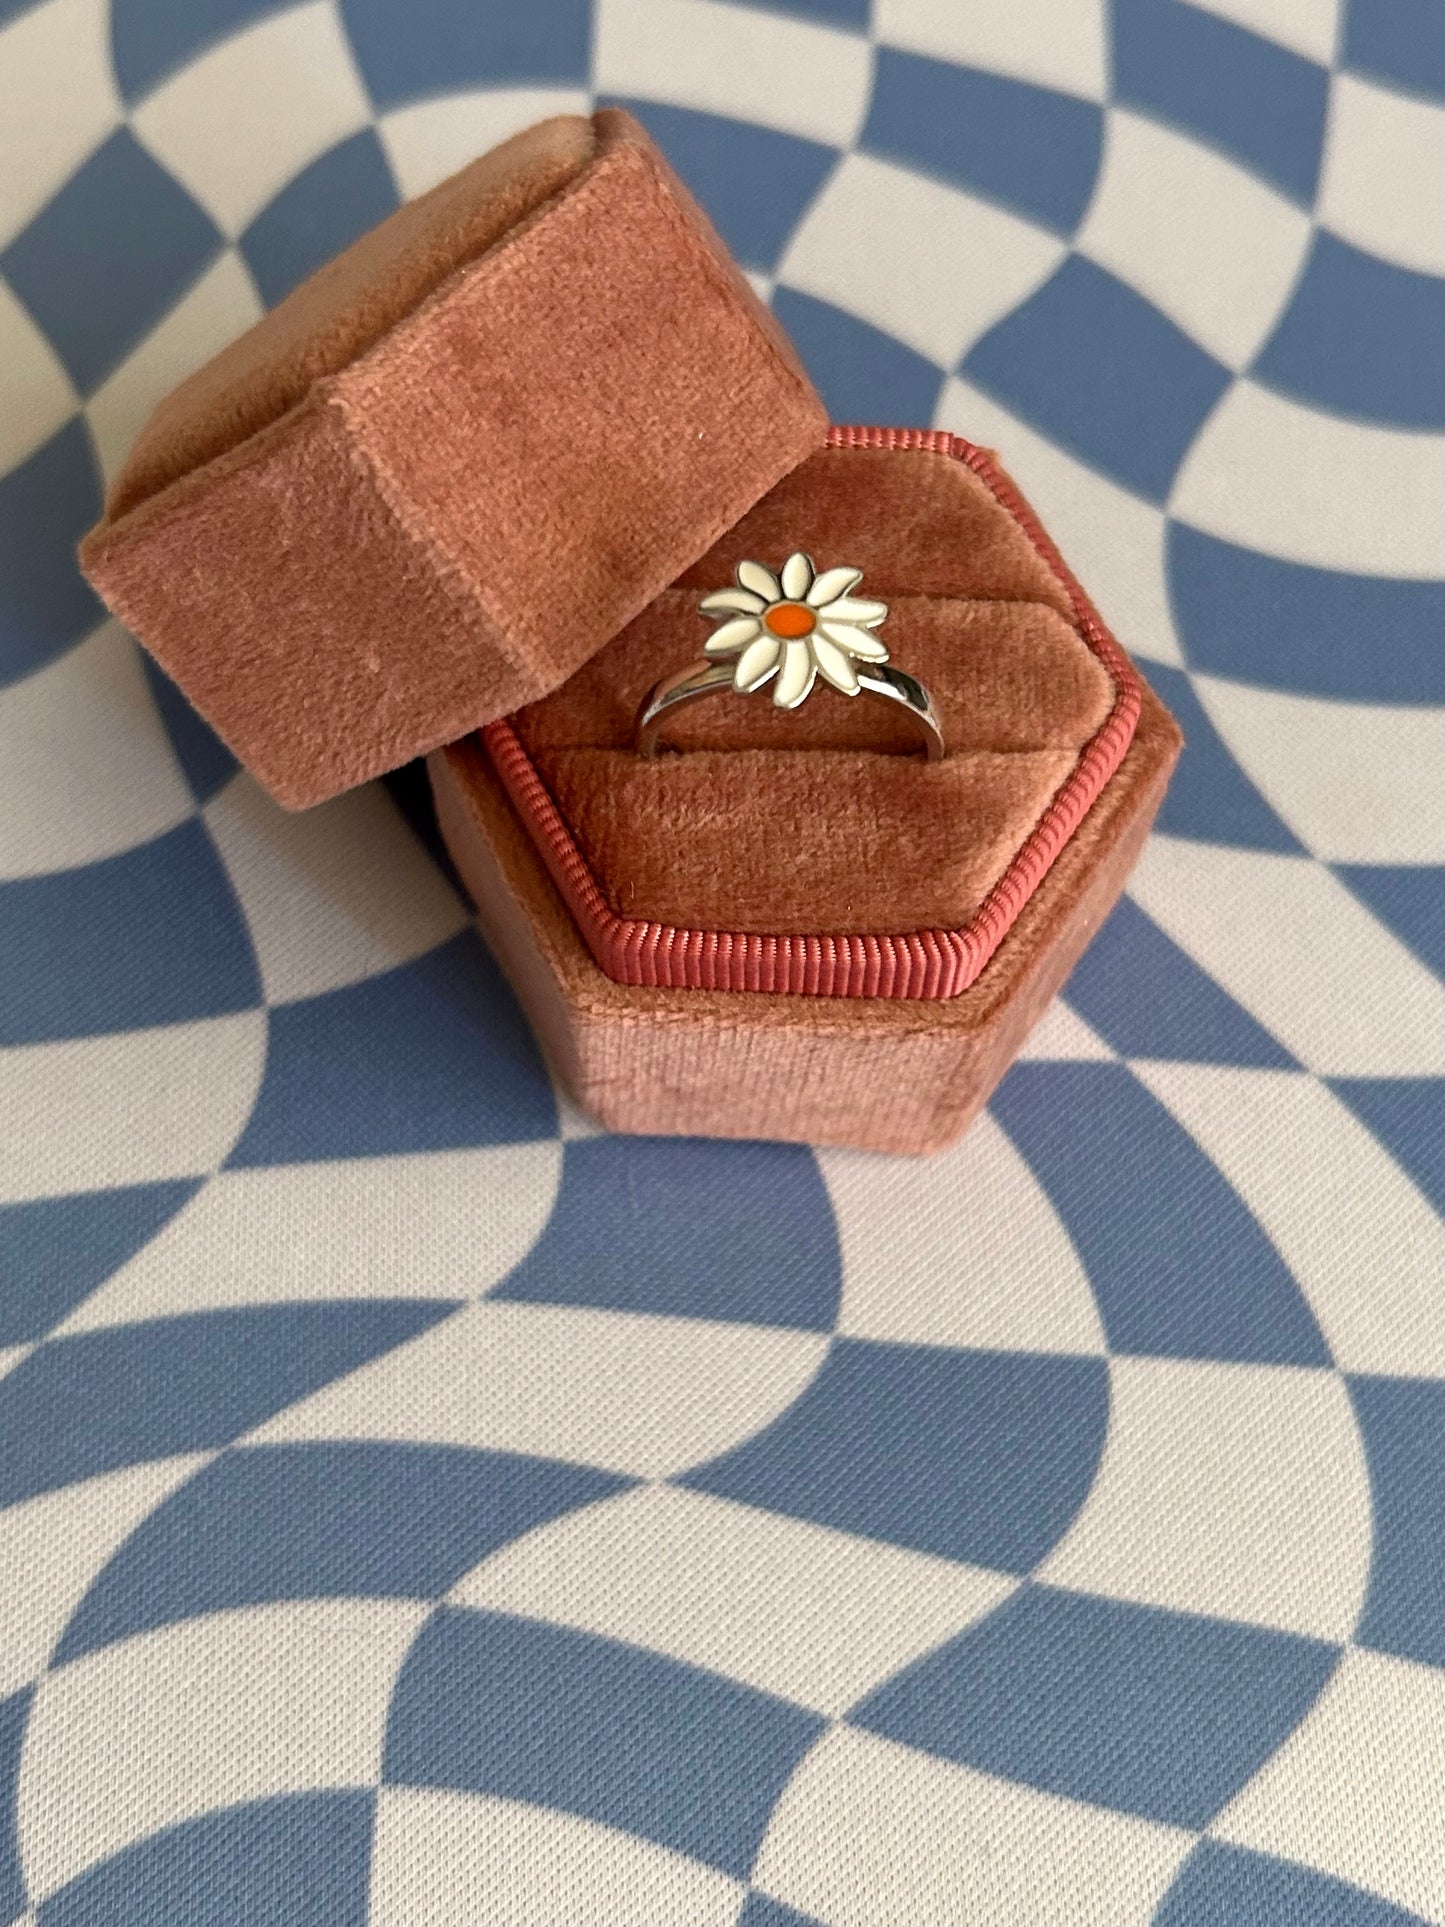 White Flower fidget ring